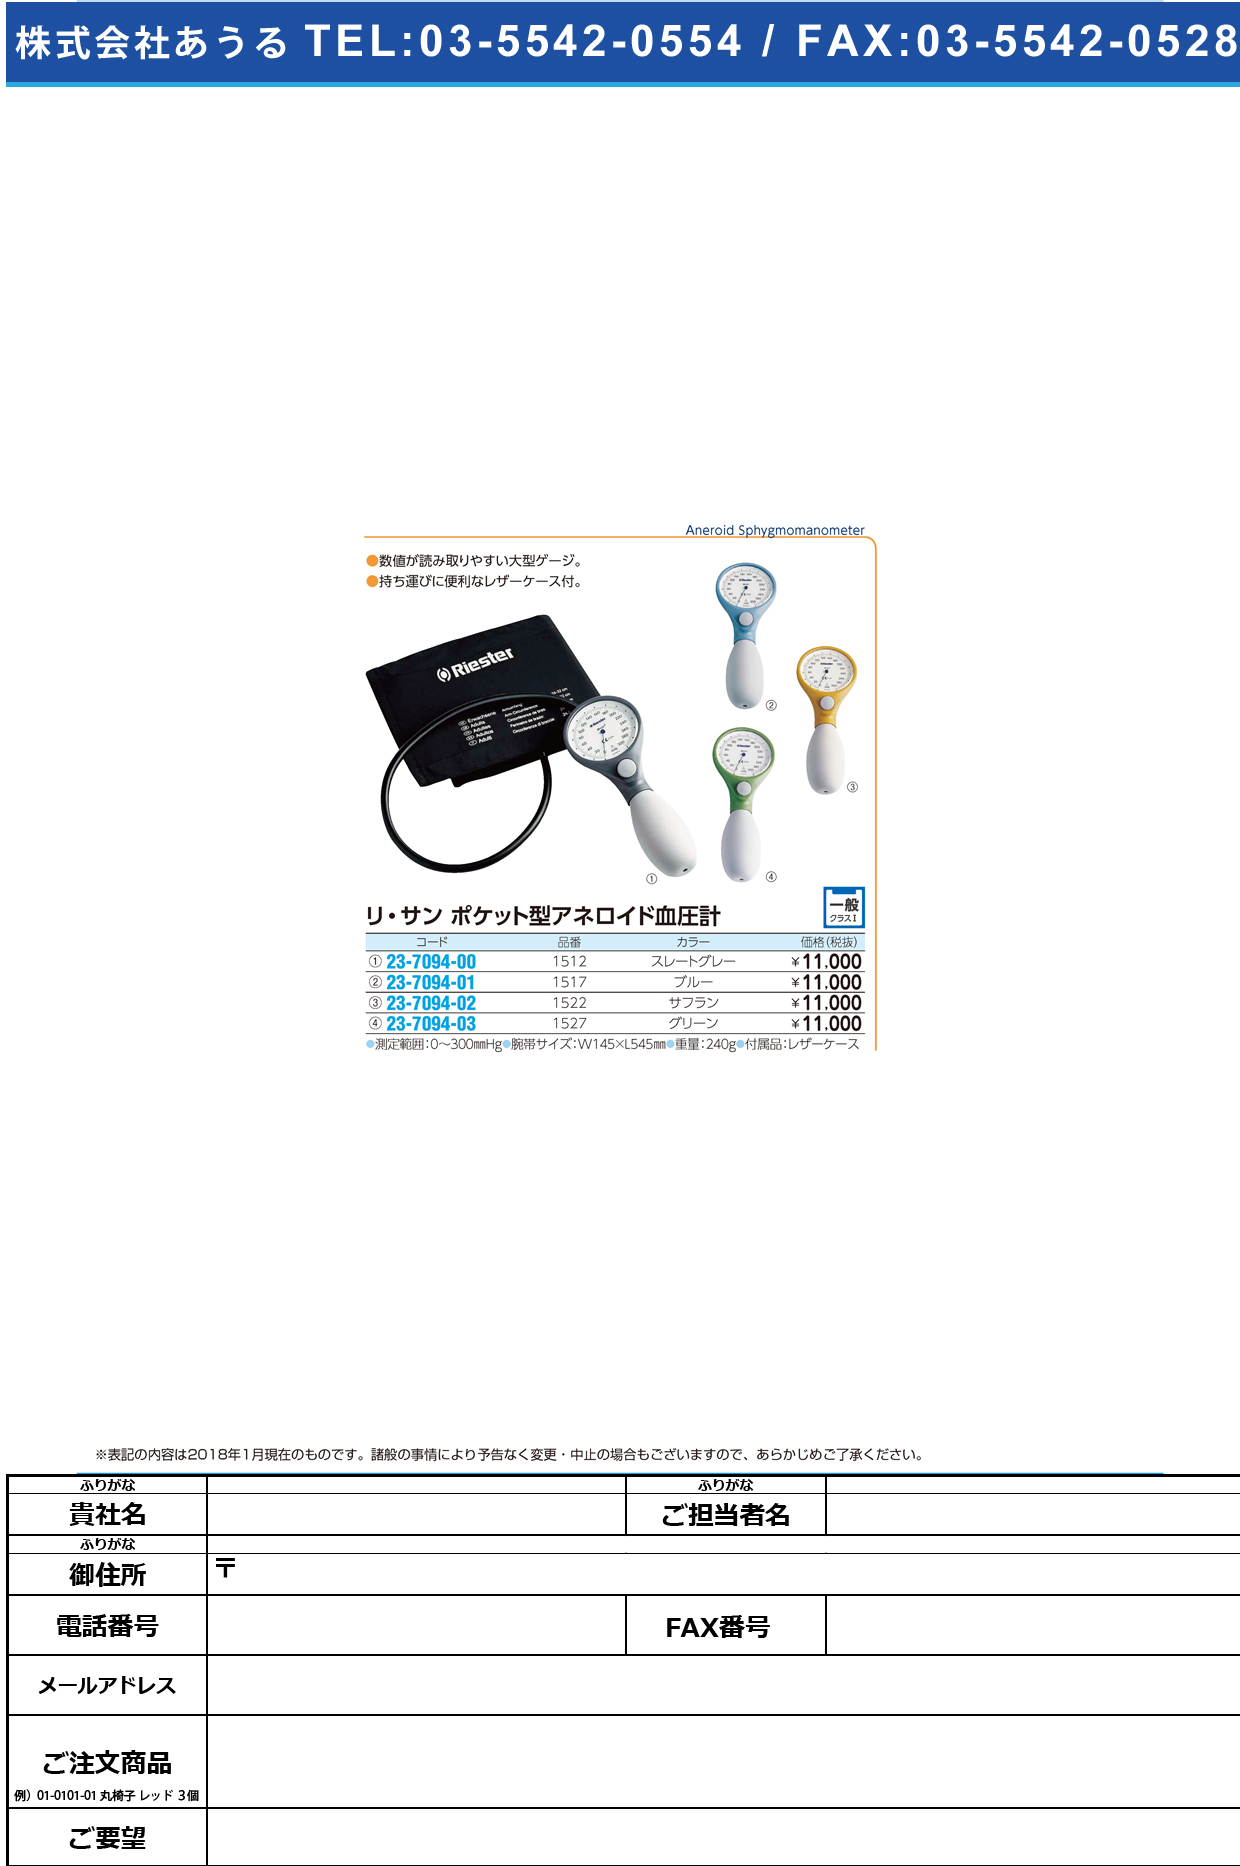 (23-7094-01)リ・サンポケットアネロイド血圧計 1517(ﾌﾞﾙｰ) ﾘ･ｻﾝﾎﾟｹｯﾄｱﾈﾛｲﾄﾞｹﾂｱﾂ【1台単位】【2018年カタログ商品】